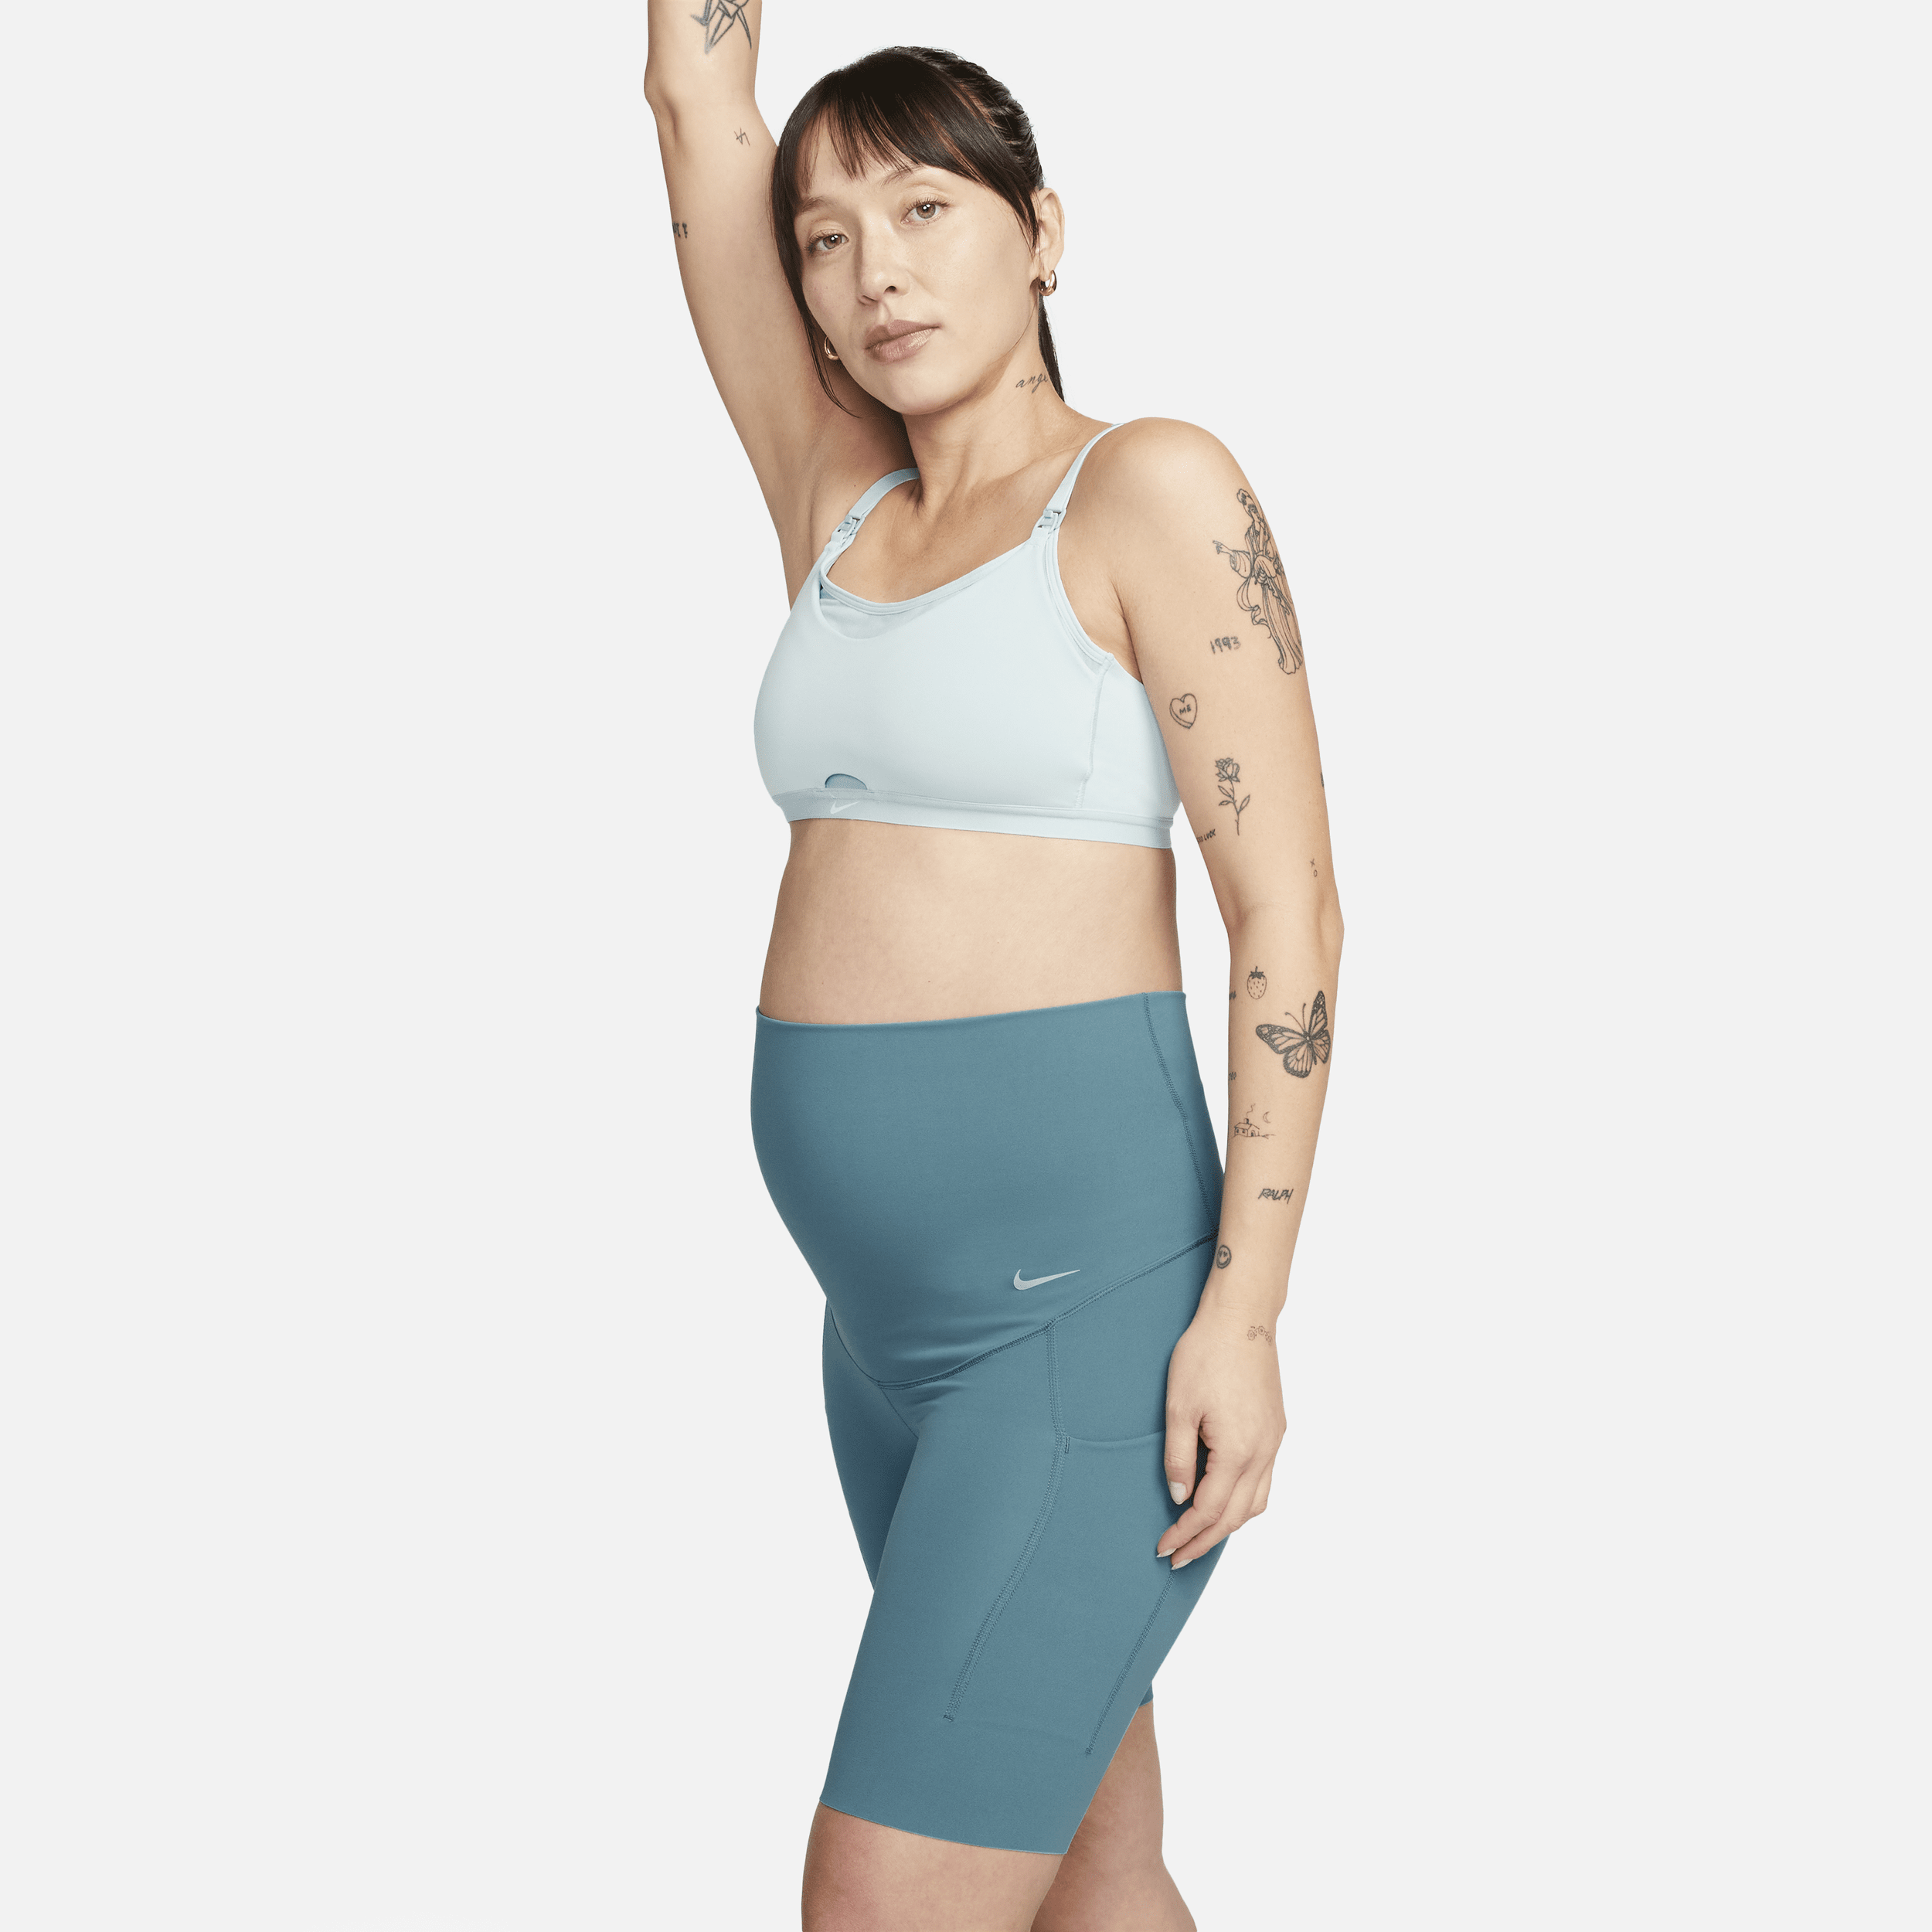 Shorts modello ciclista 21 cm a vita alta e sostegno leggero con tasche Nike Zenvy (M) – Donna (Maternità) - Blu